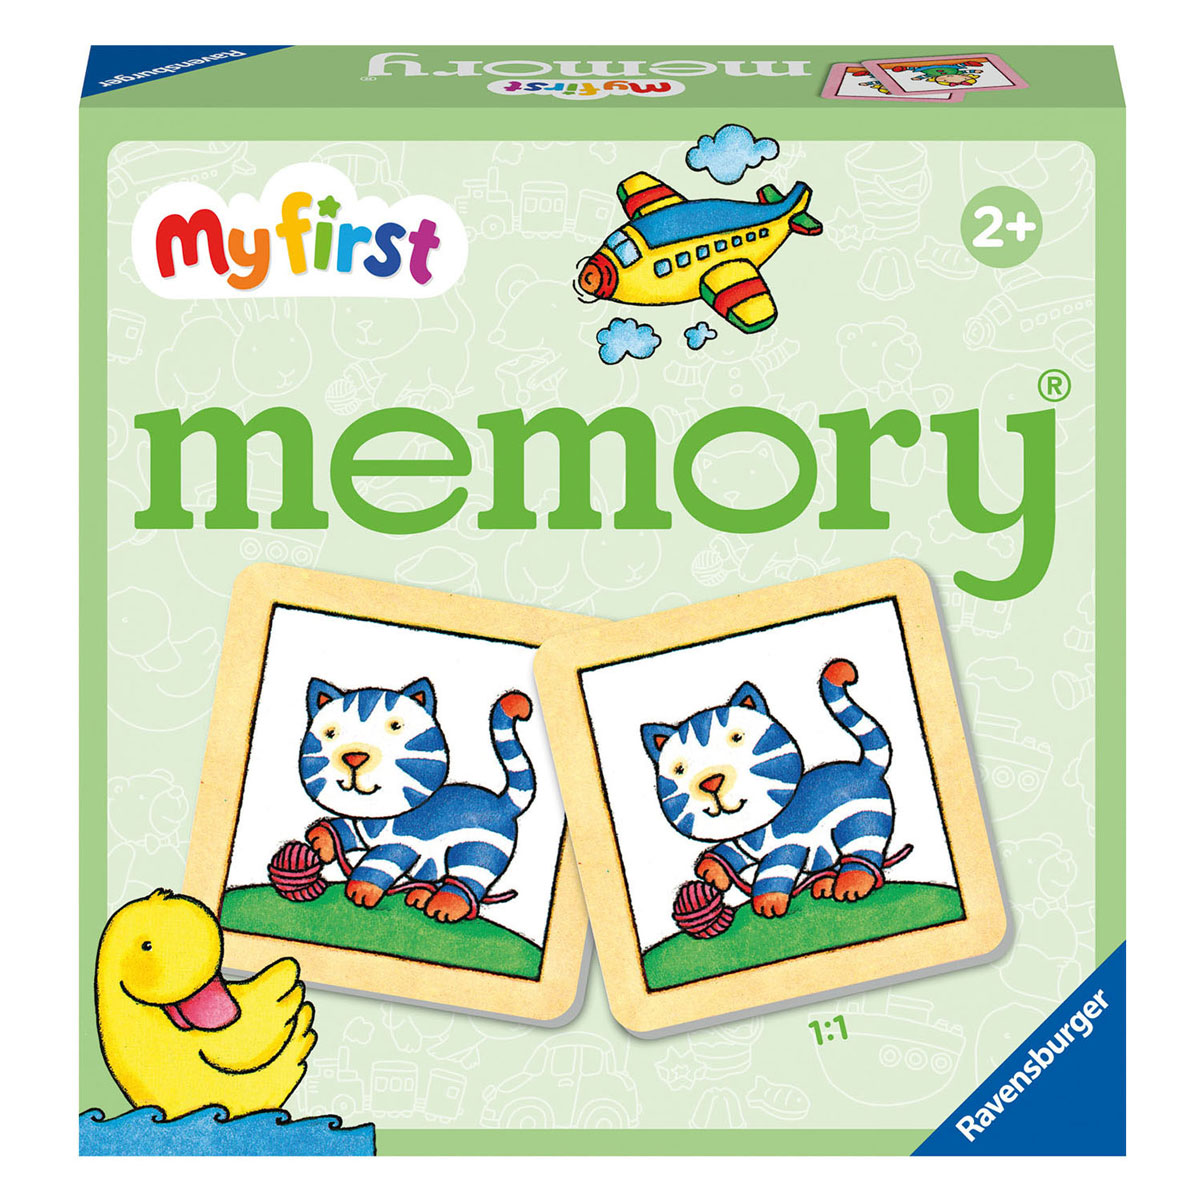 Mon premier Memory, mon jouet préféré